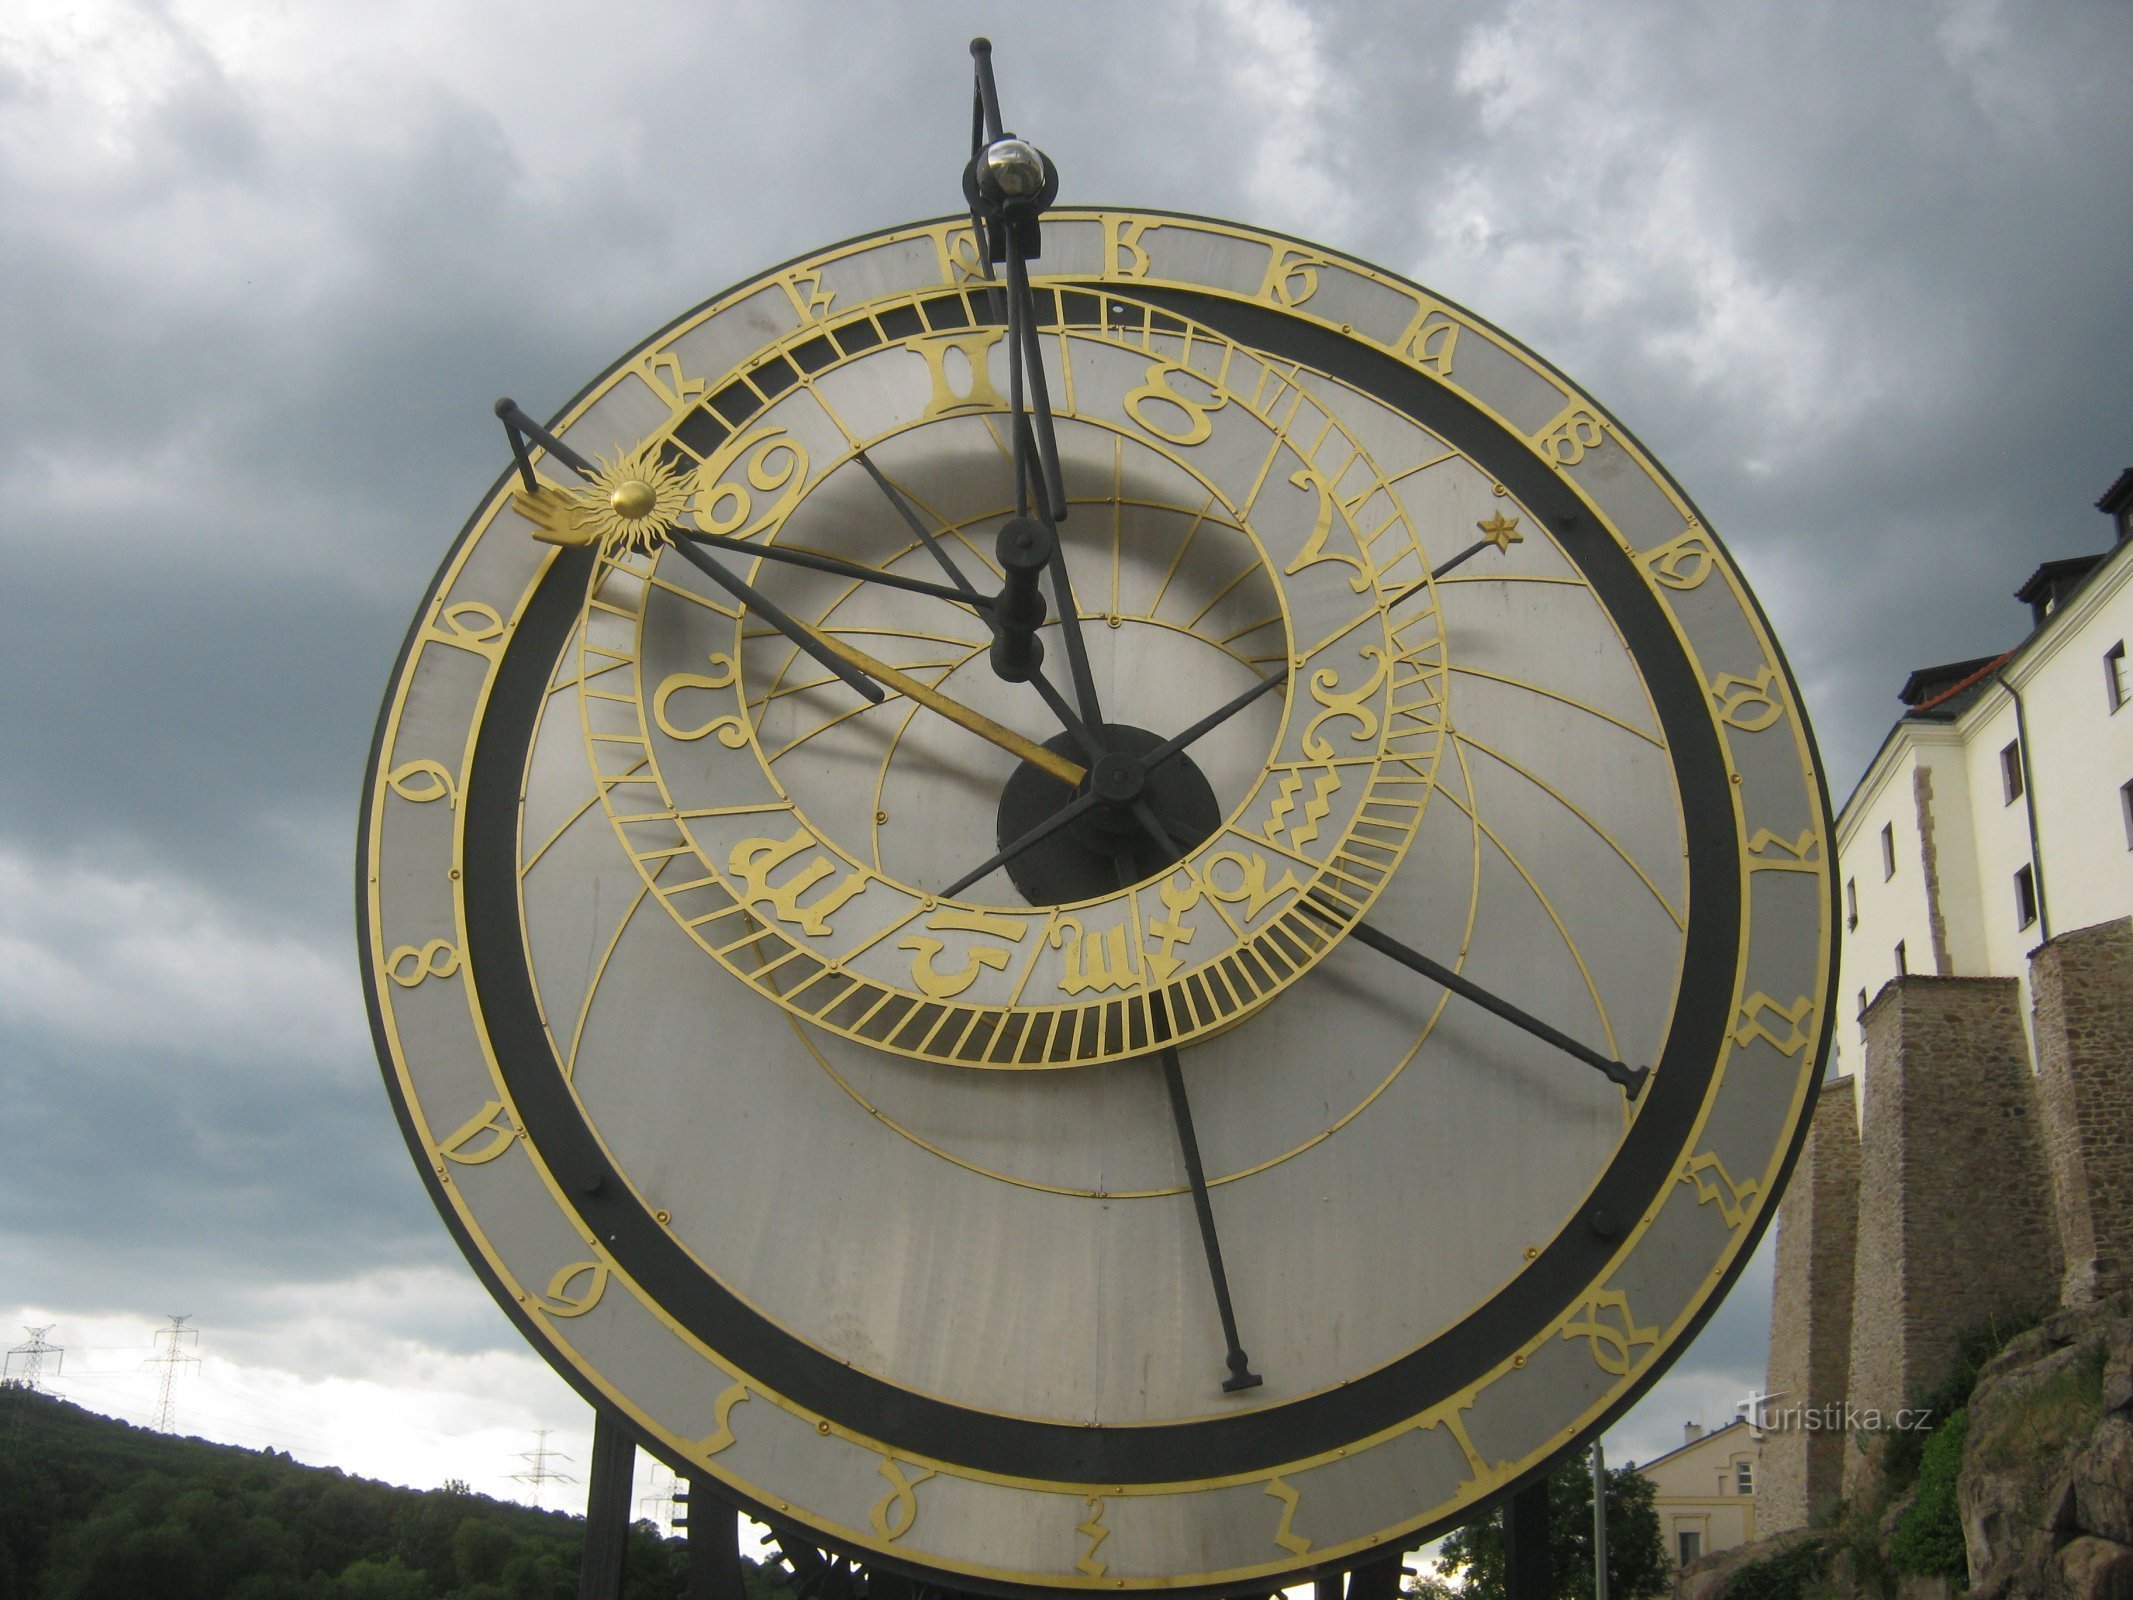 Ceasul Astronomic Cadaqués